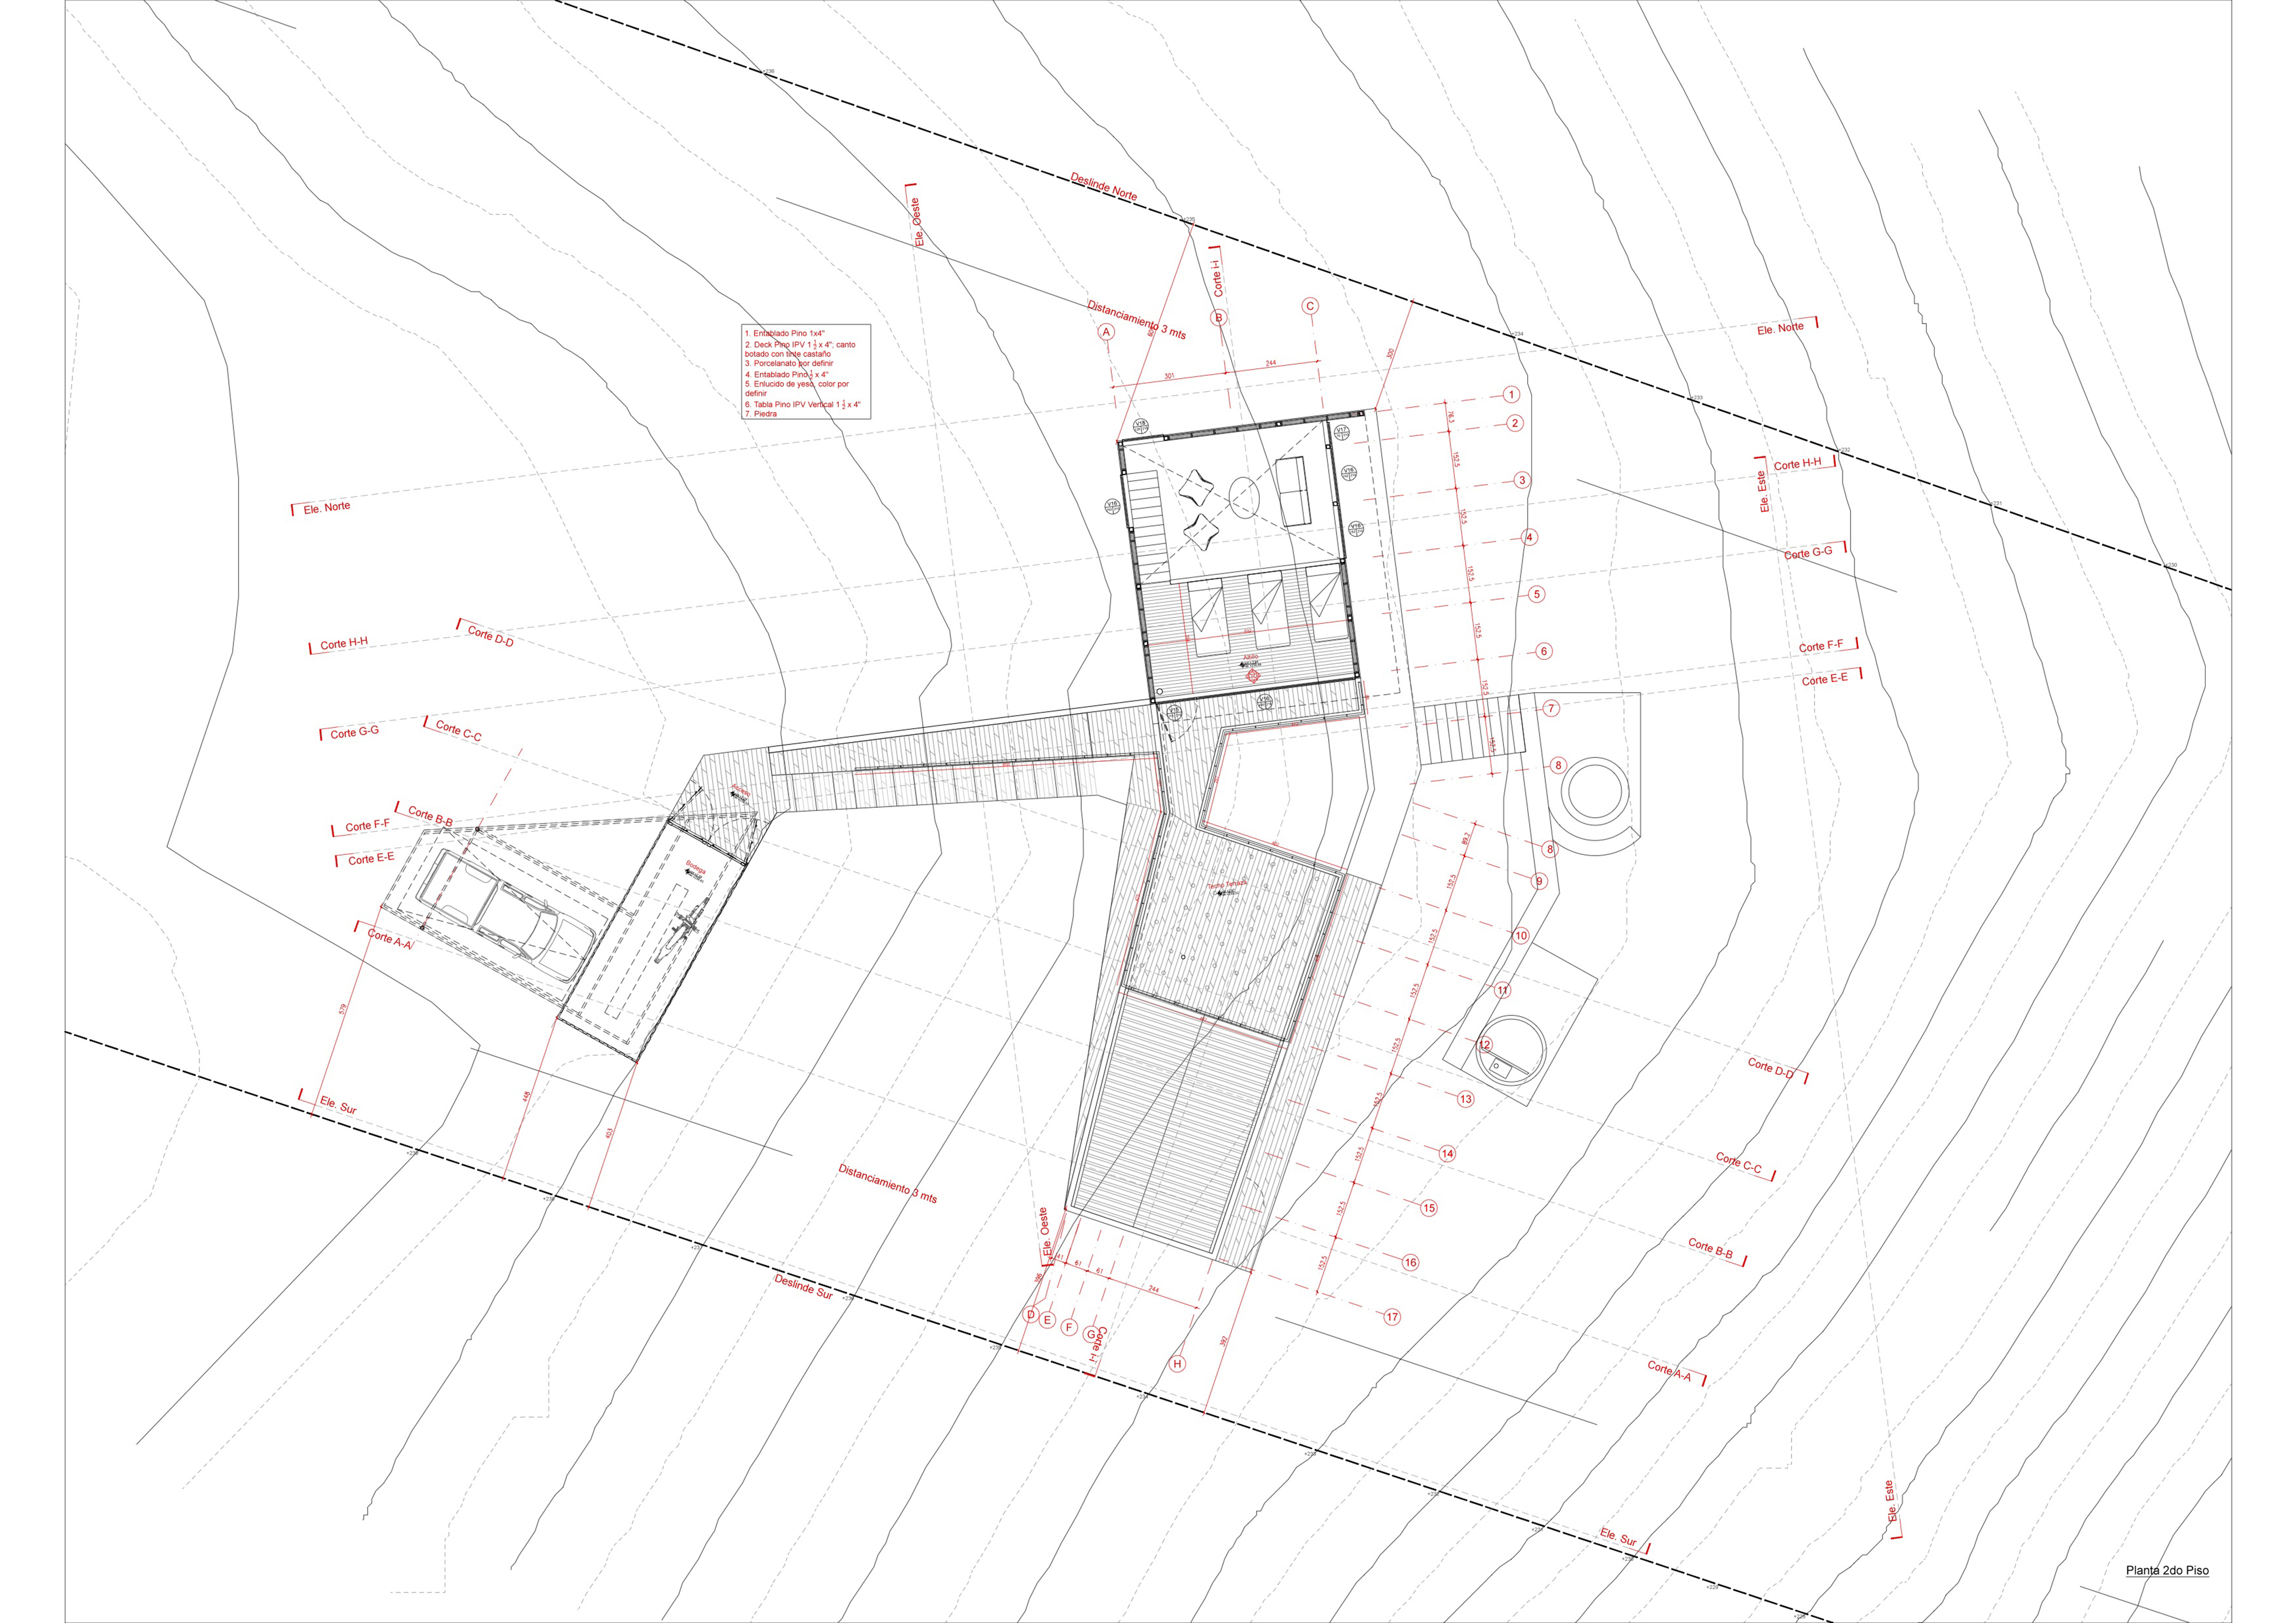 2 Floor Plan, Source by NicolasCRUZarquitectos